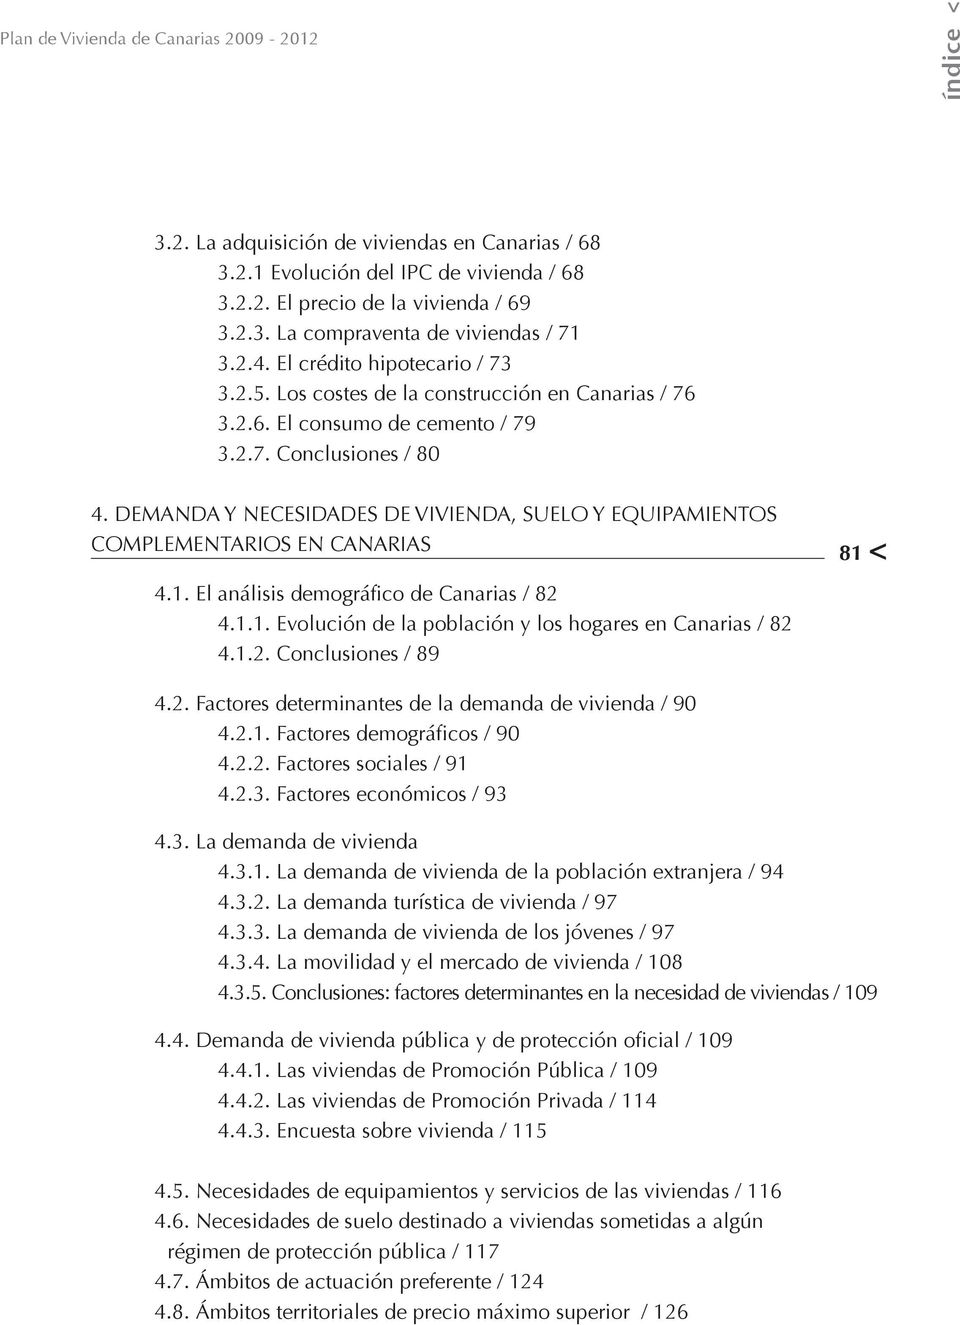 DEMANDA Y NECESIDADES DE VIVIENDA, SUELO Y EQUIPAMIENTOS COMPLEMENTARIOS EN CANARIAS 81 < 4.1. El análisis demográfico de Canarias / 82 4.1.1. Evolución de la población y los hogares en Canarias / 82 4.